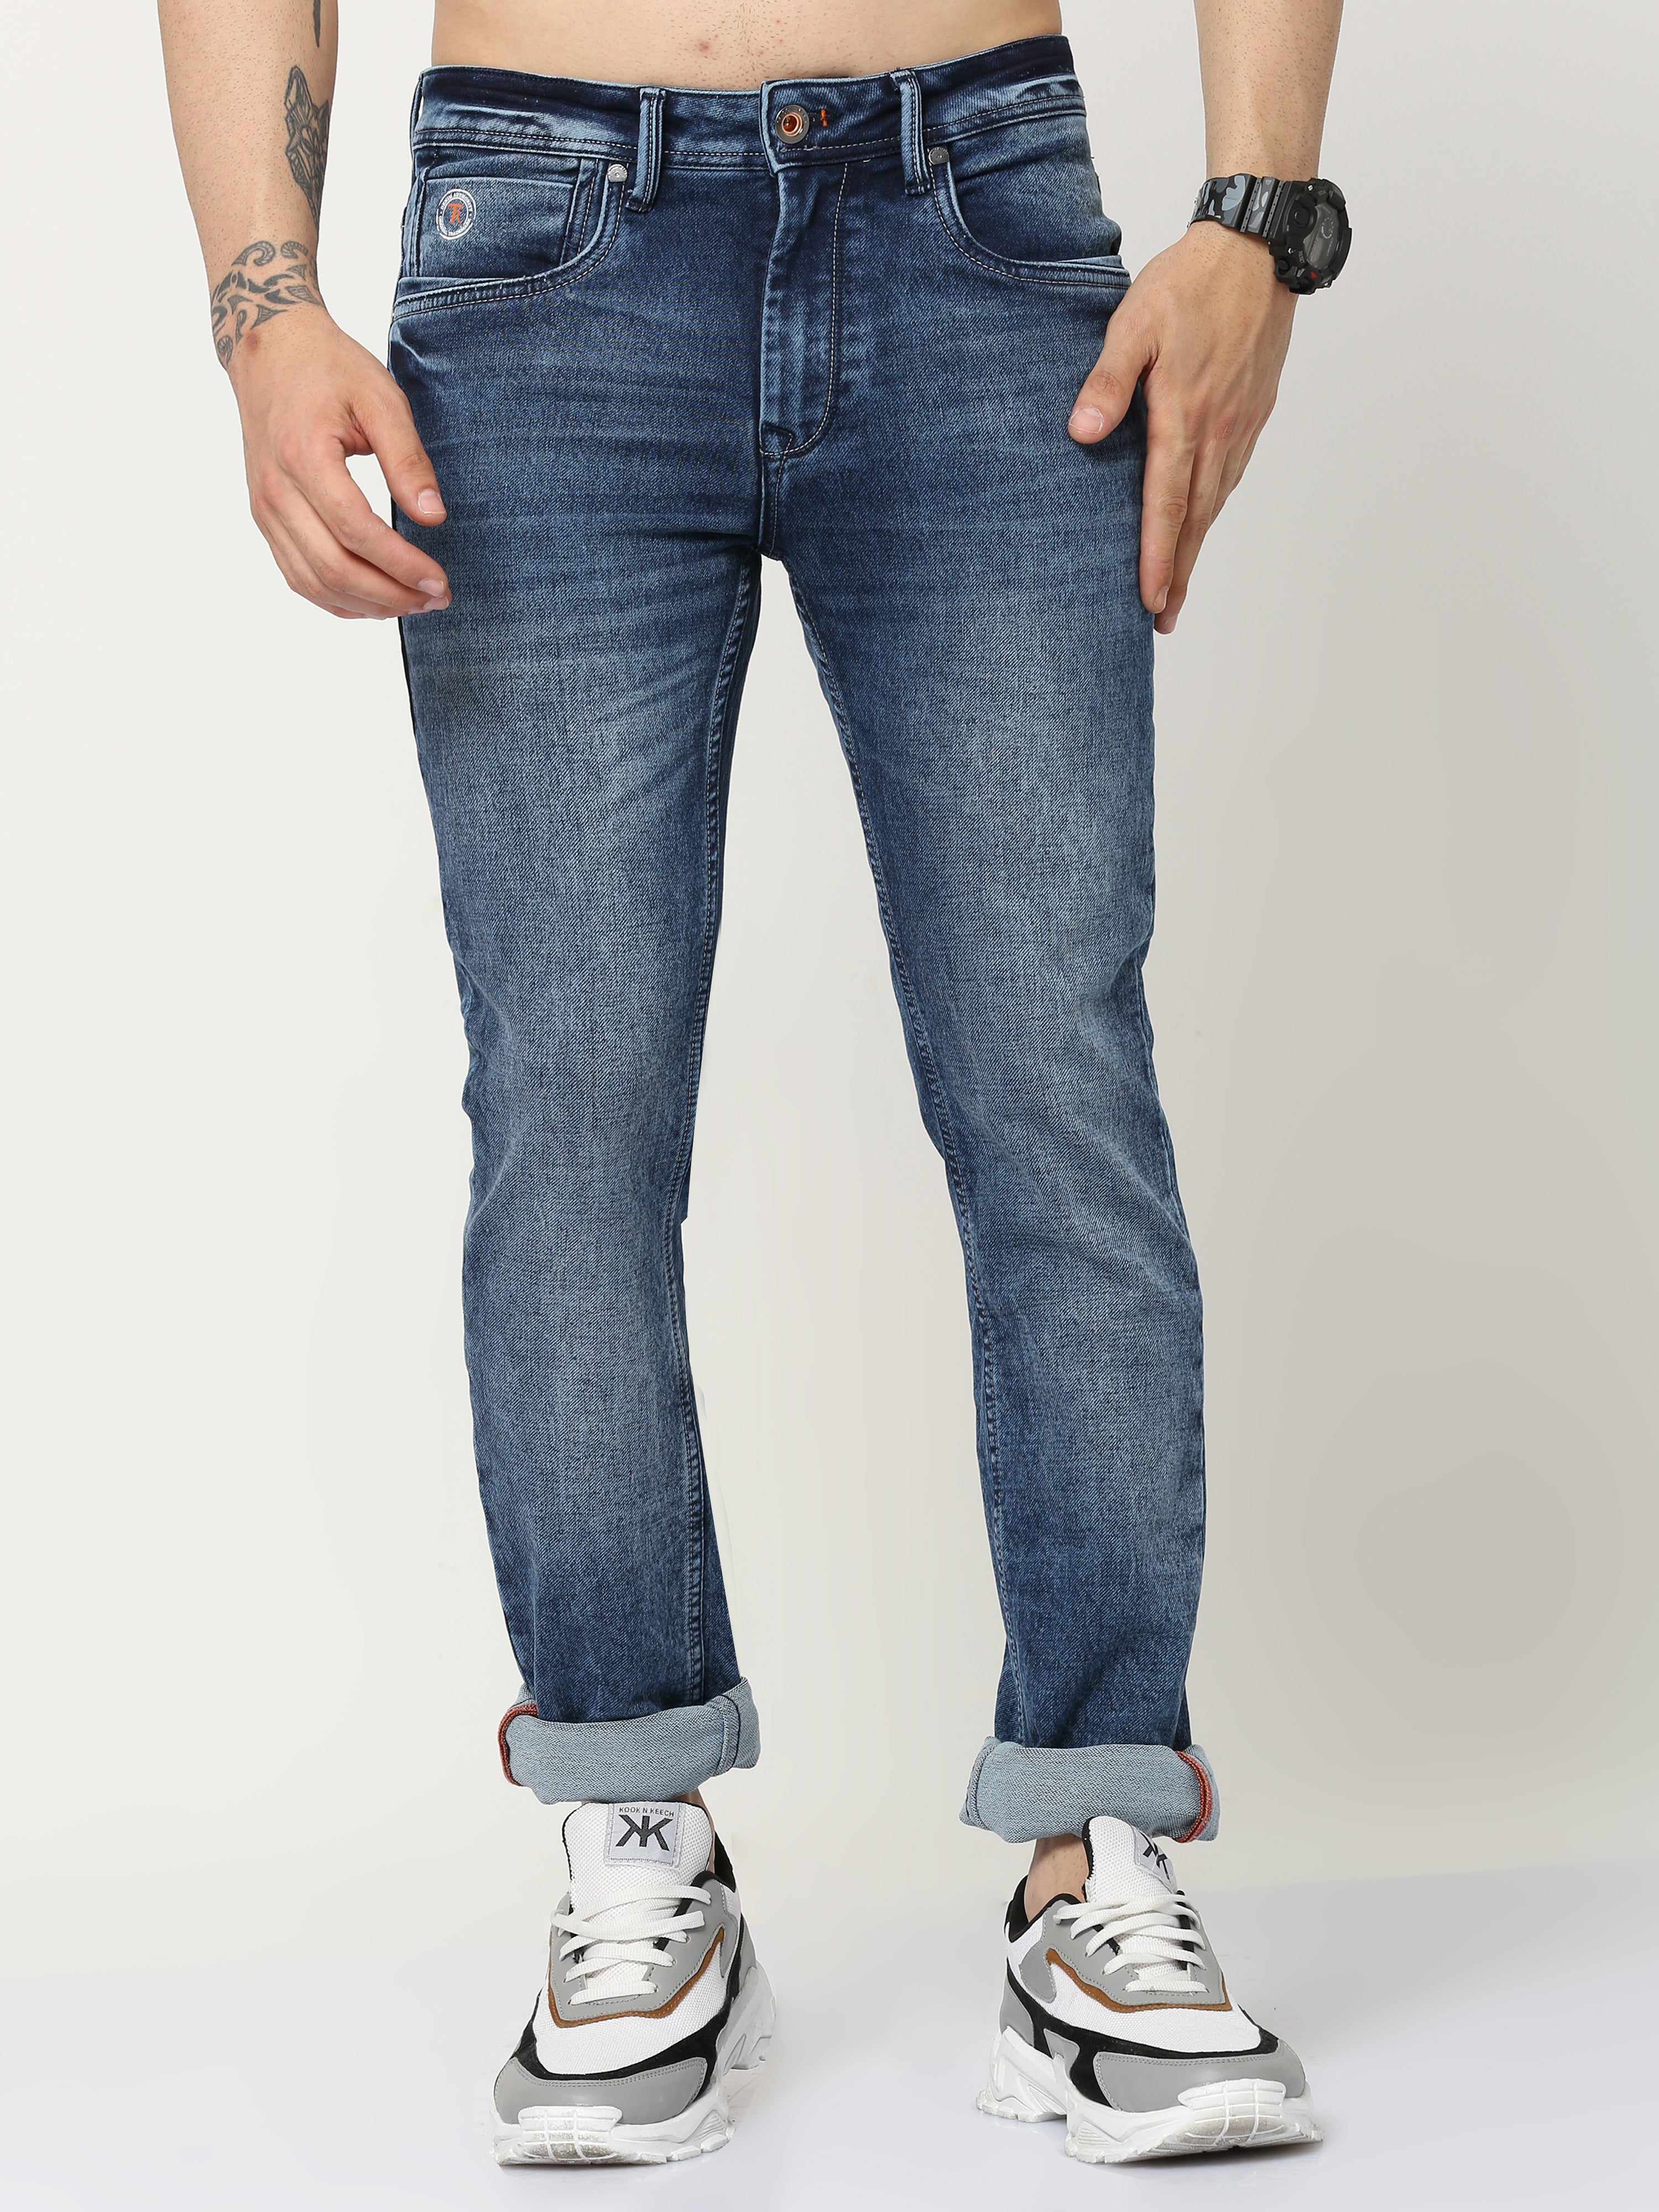 Sleek Form Men's Slim Fit Jeans